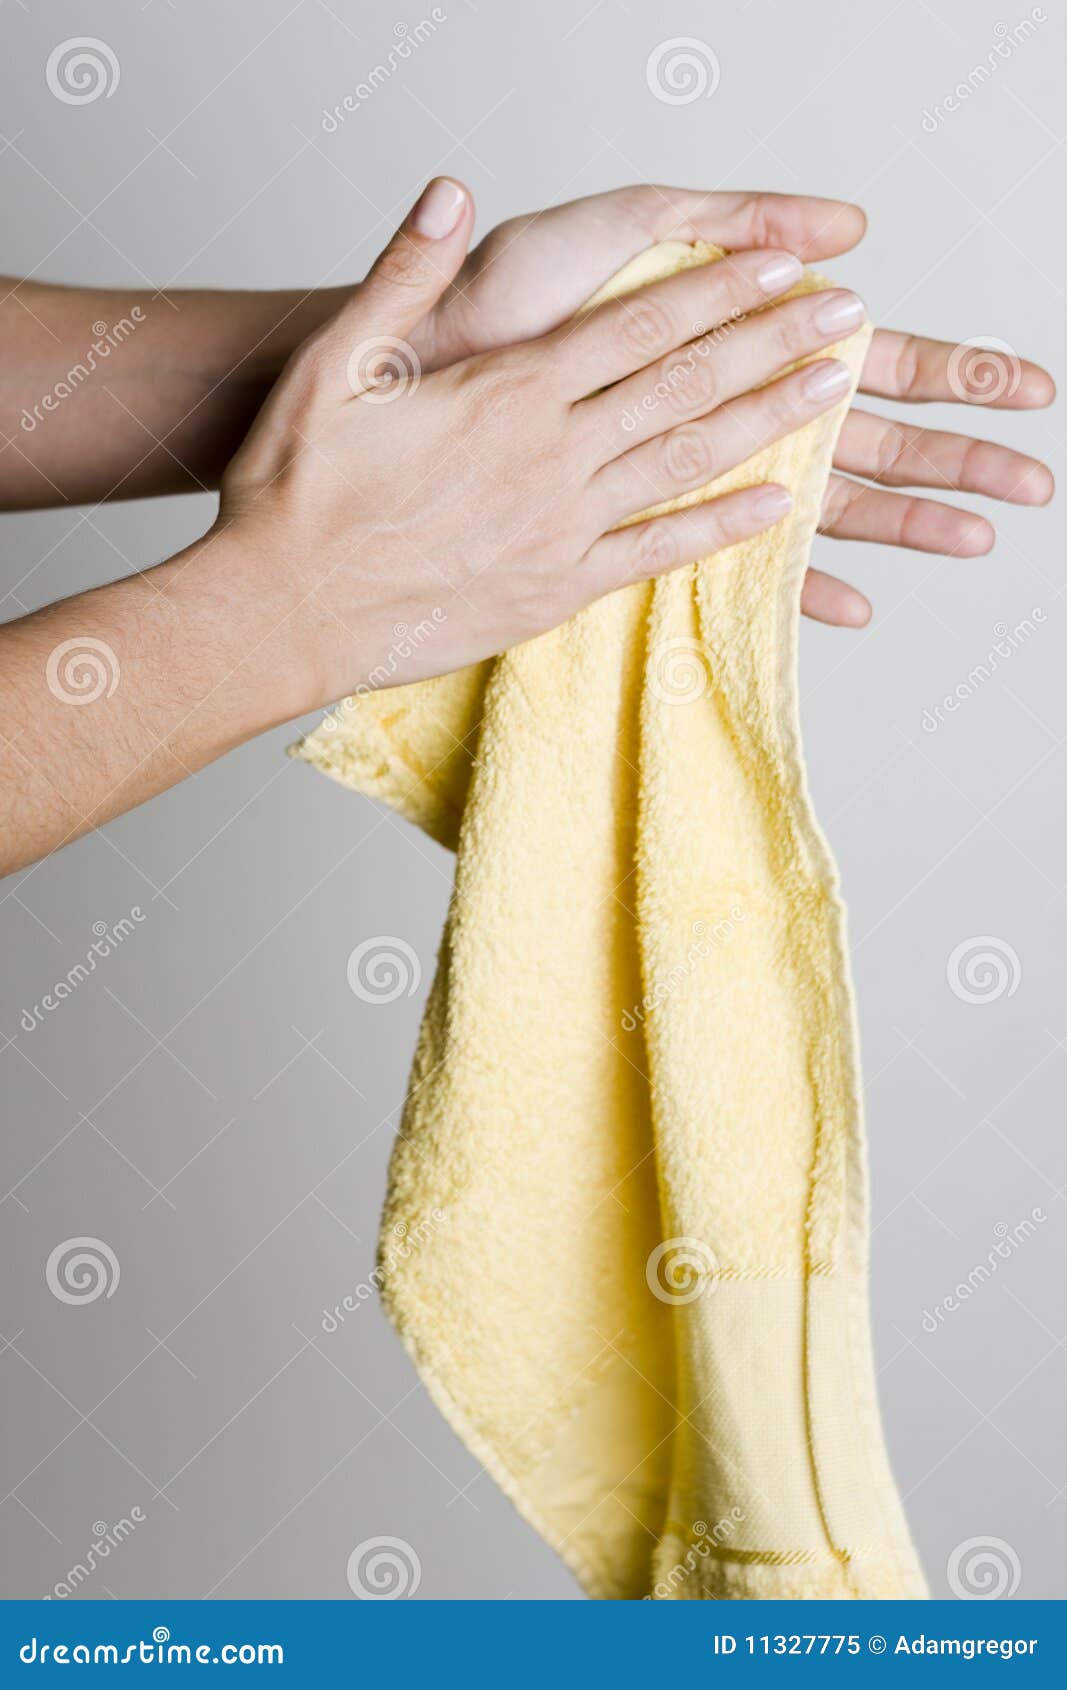 Вытирание полотенцем. Полотенце для рук. Вытирает руки. Вытирать руки полотенцем. Человек вытирает руки.